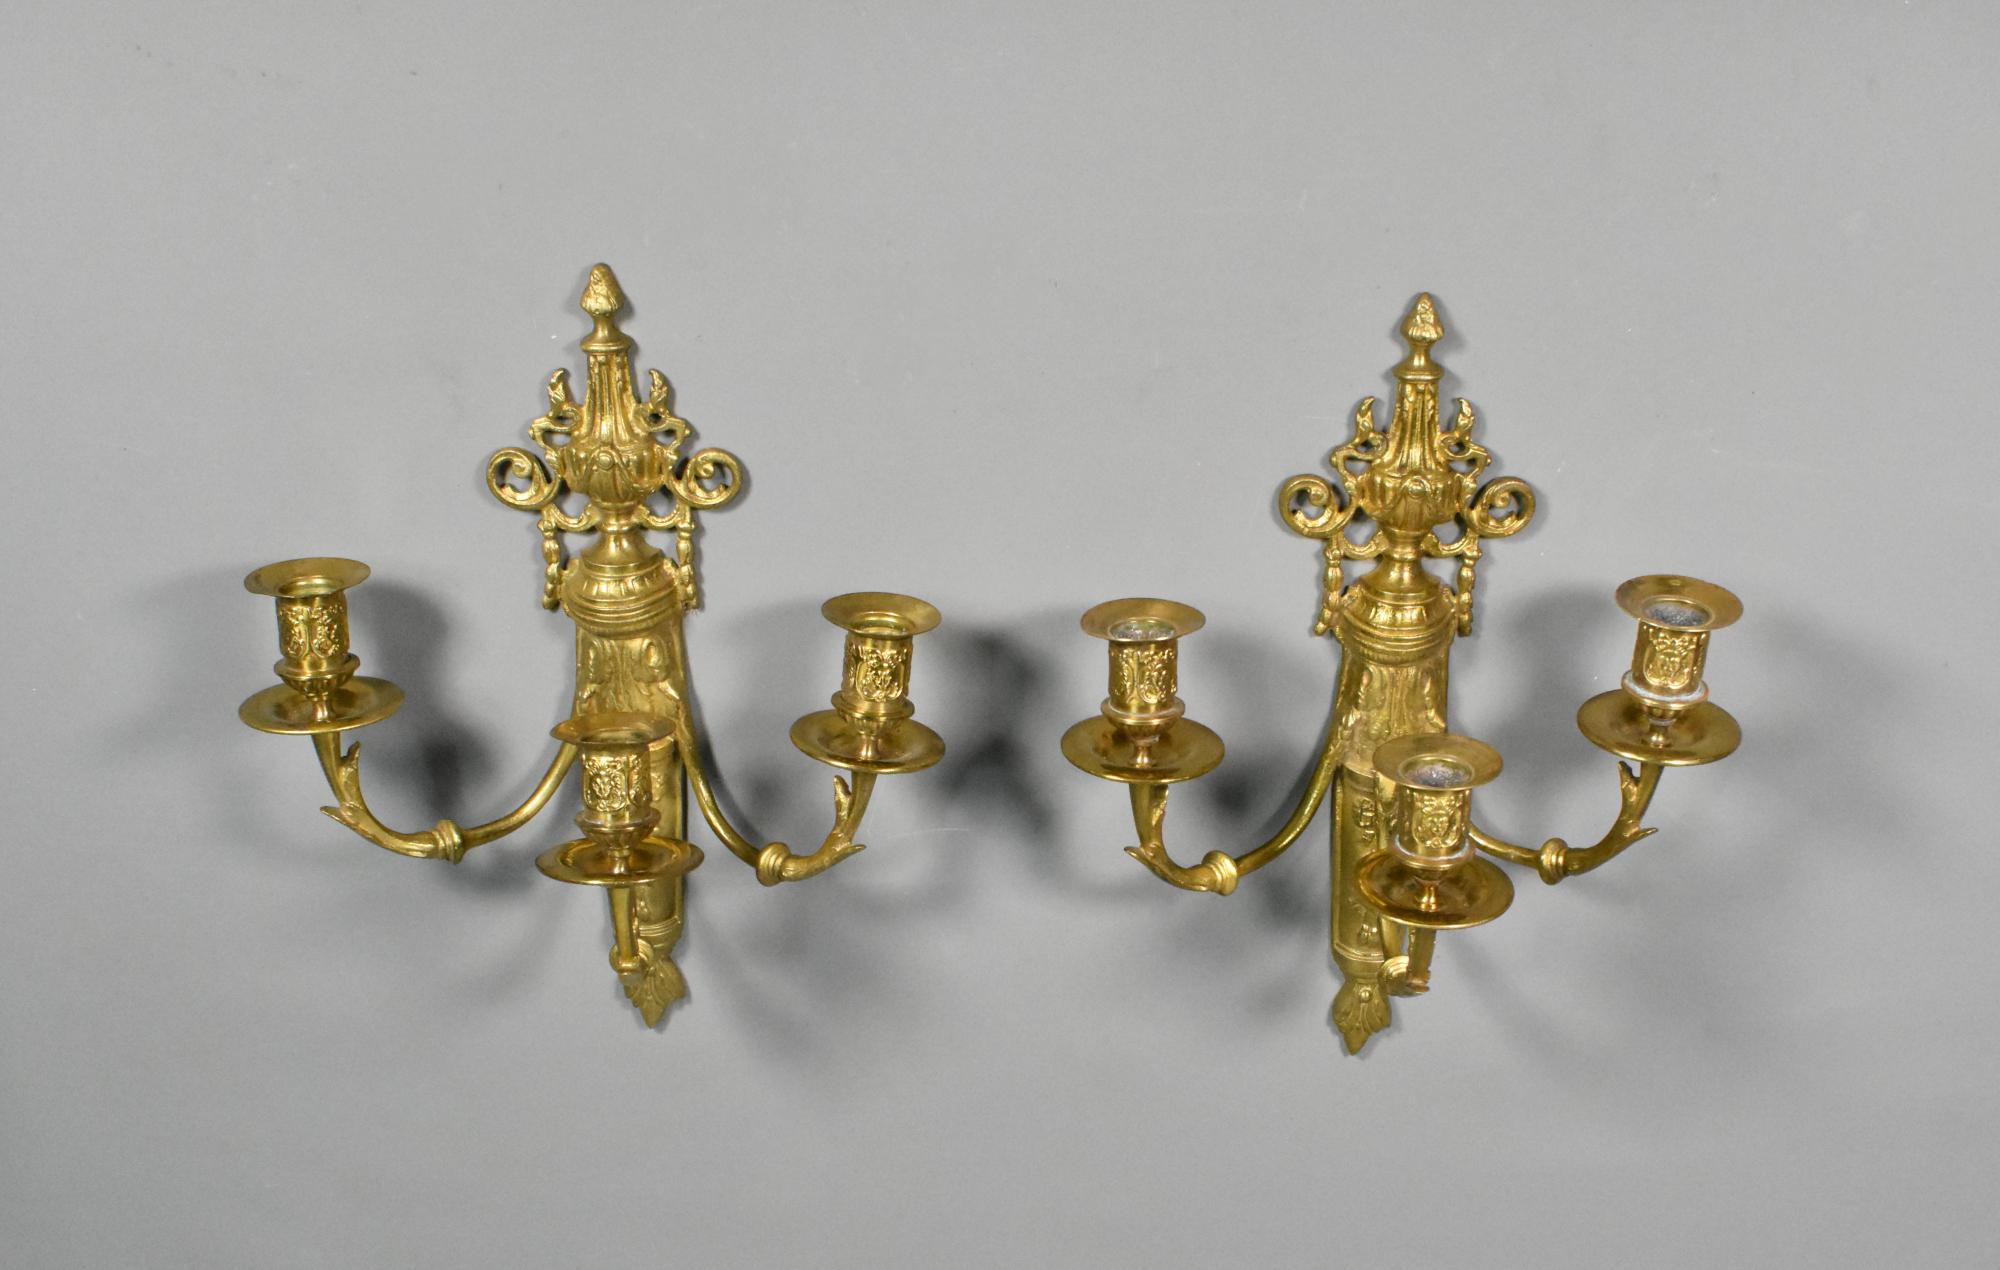 Paire de candélabres muraux français en bronze doré de style Louis XVI 

Paire de candélabres muraux en bronze doré présentant d'élégants motifs de guirlandes, de rubans et de fleurs, caractéristiques de la décoration de style Louis XVI. 

La tige